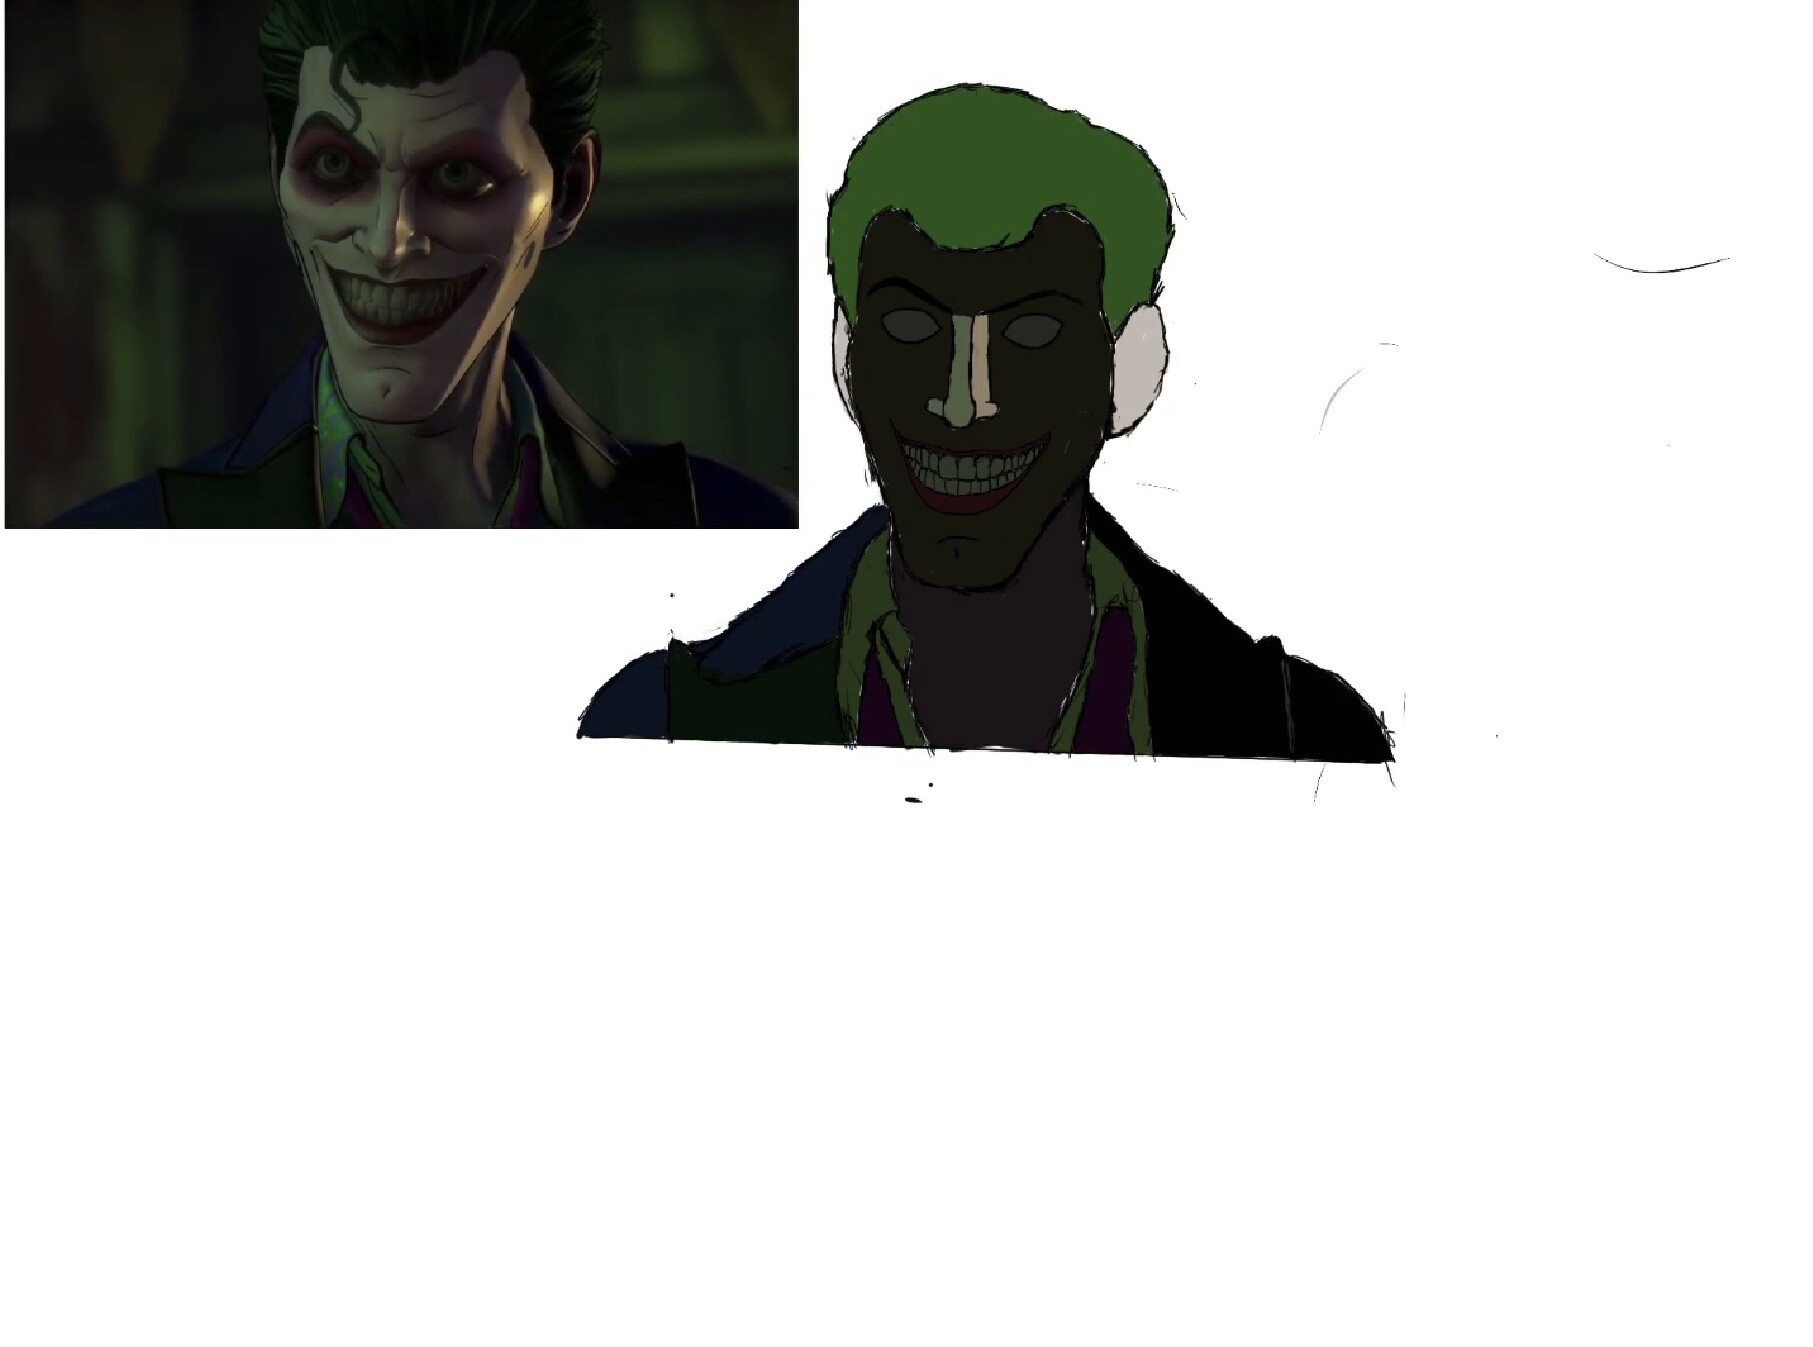 ArtStation - Villain John Doe (Telltale Joker) Fan Art